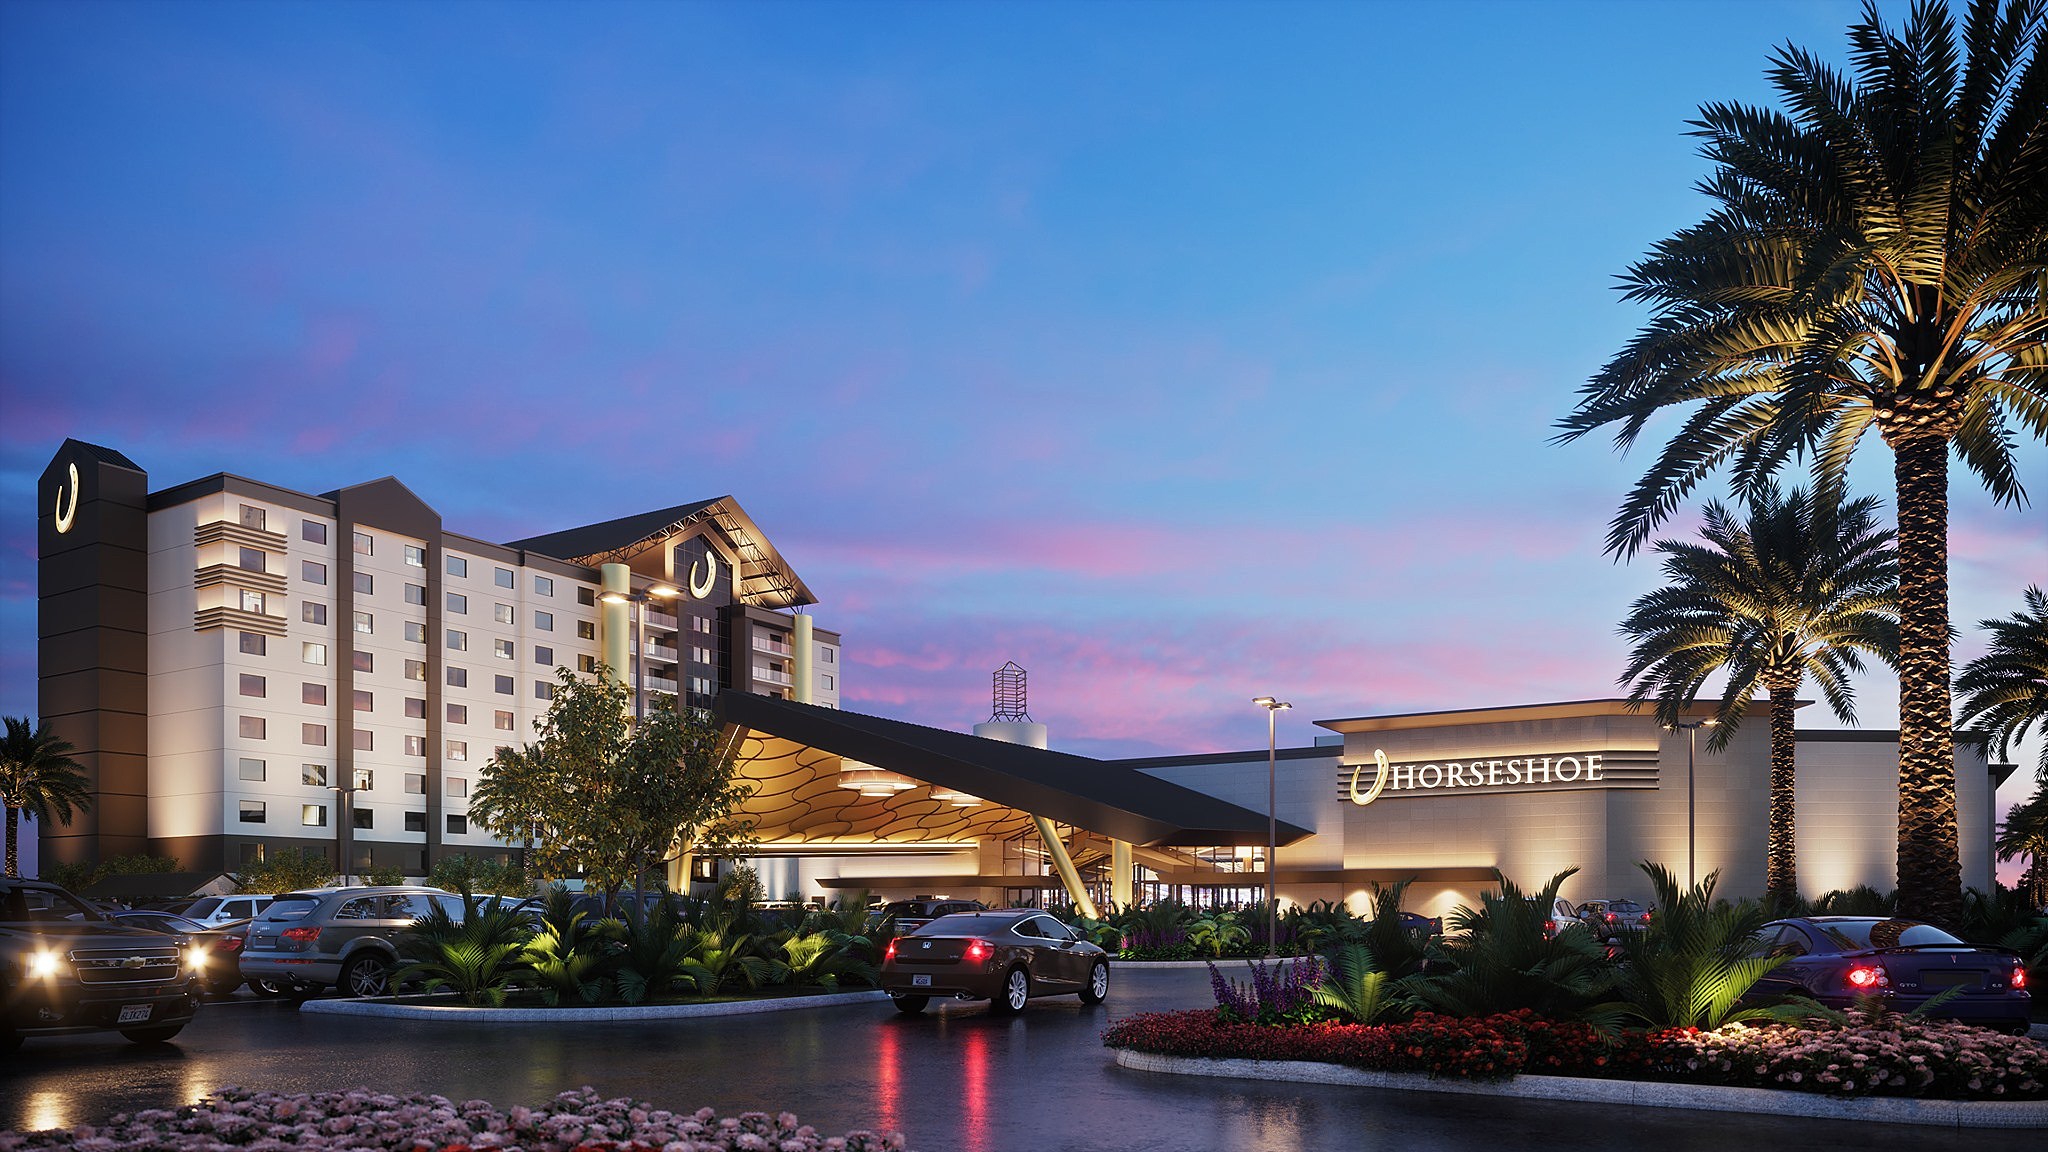 horseshoe casino resort